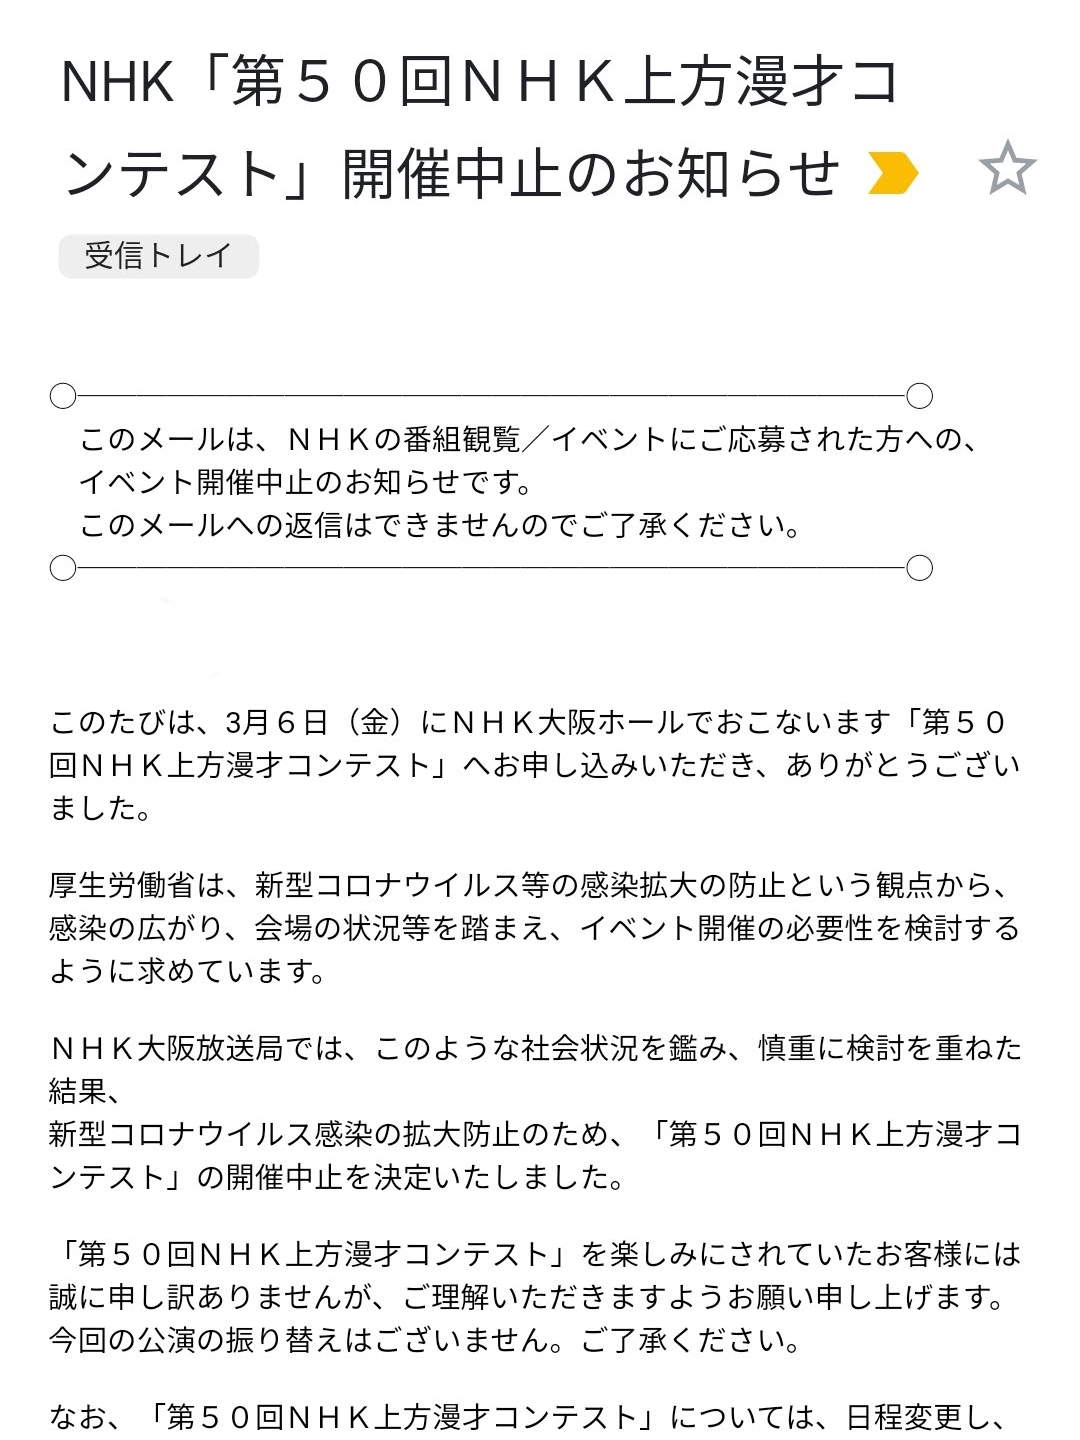 NHK上方漫才コンテスト中止のお知らせ